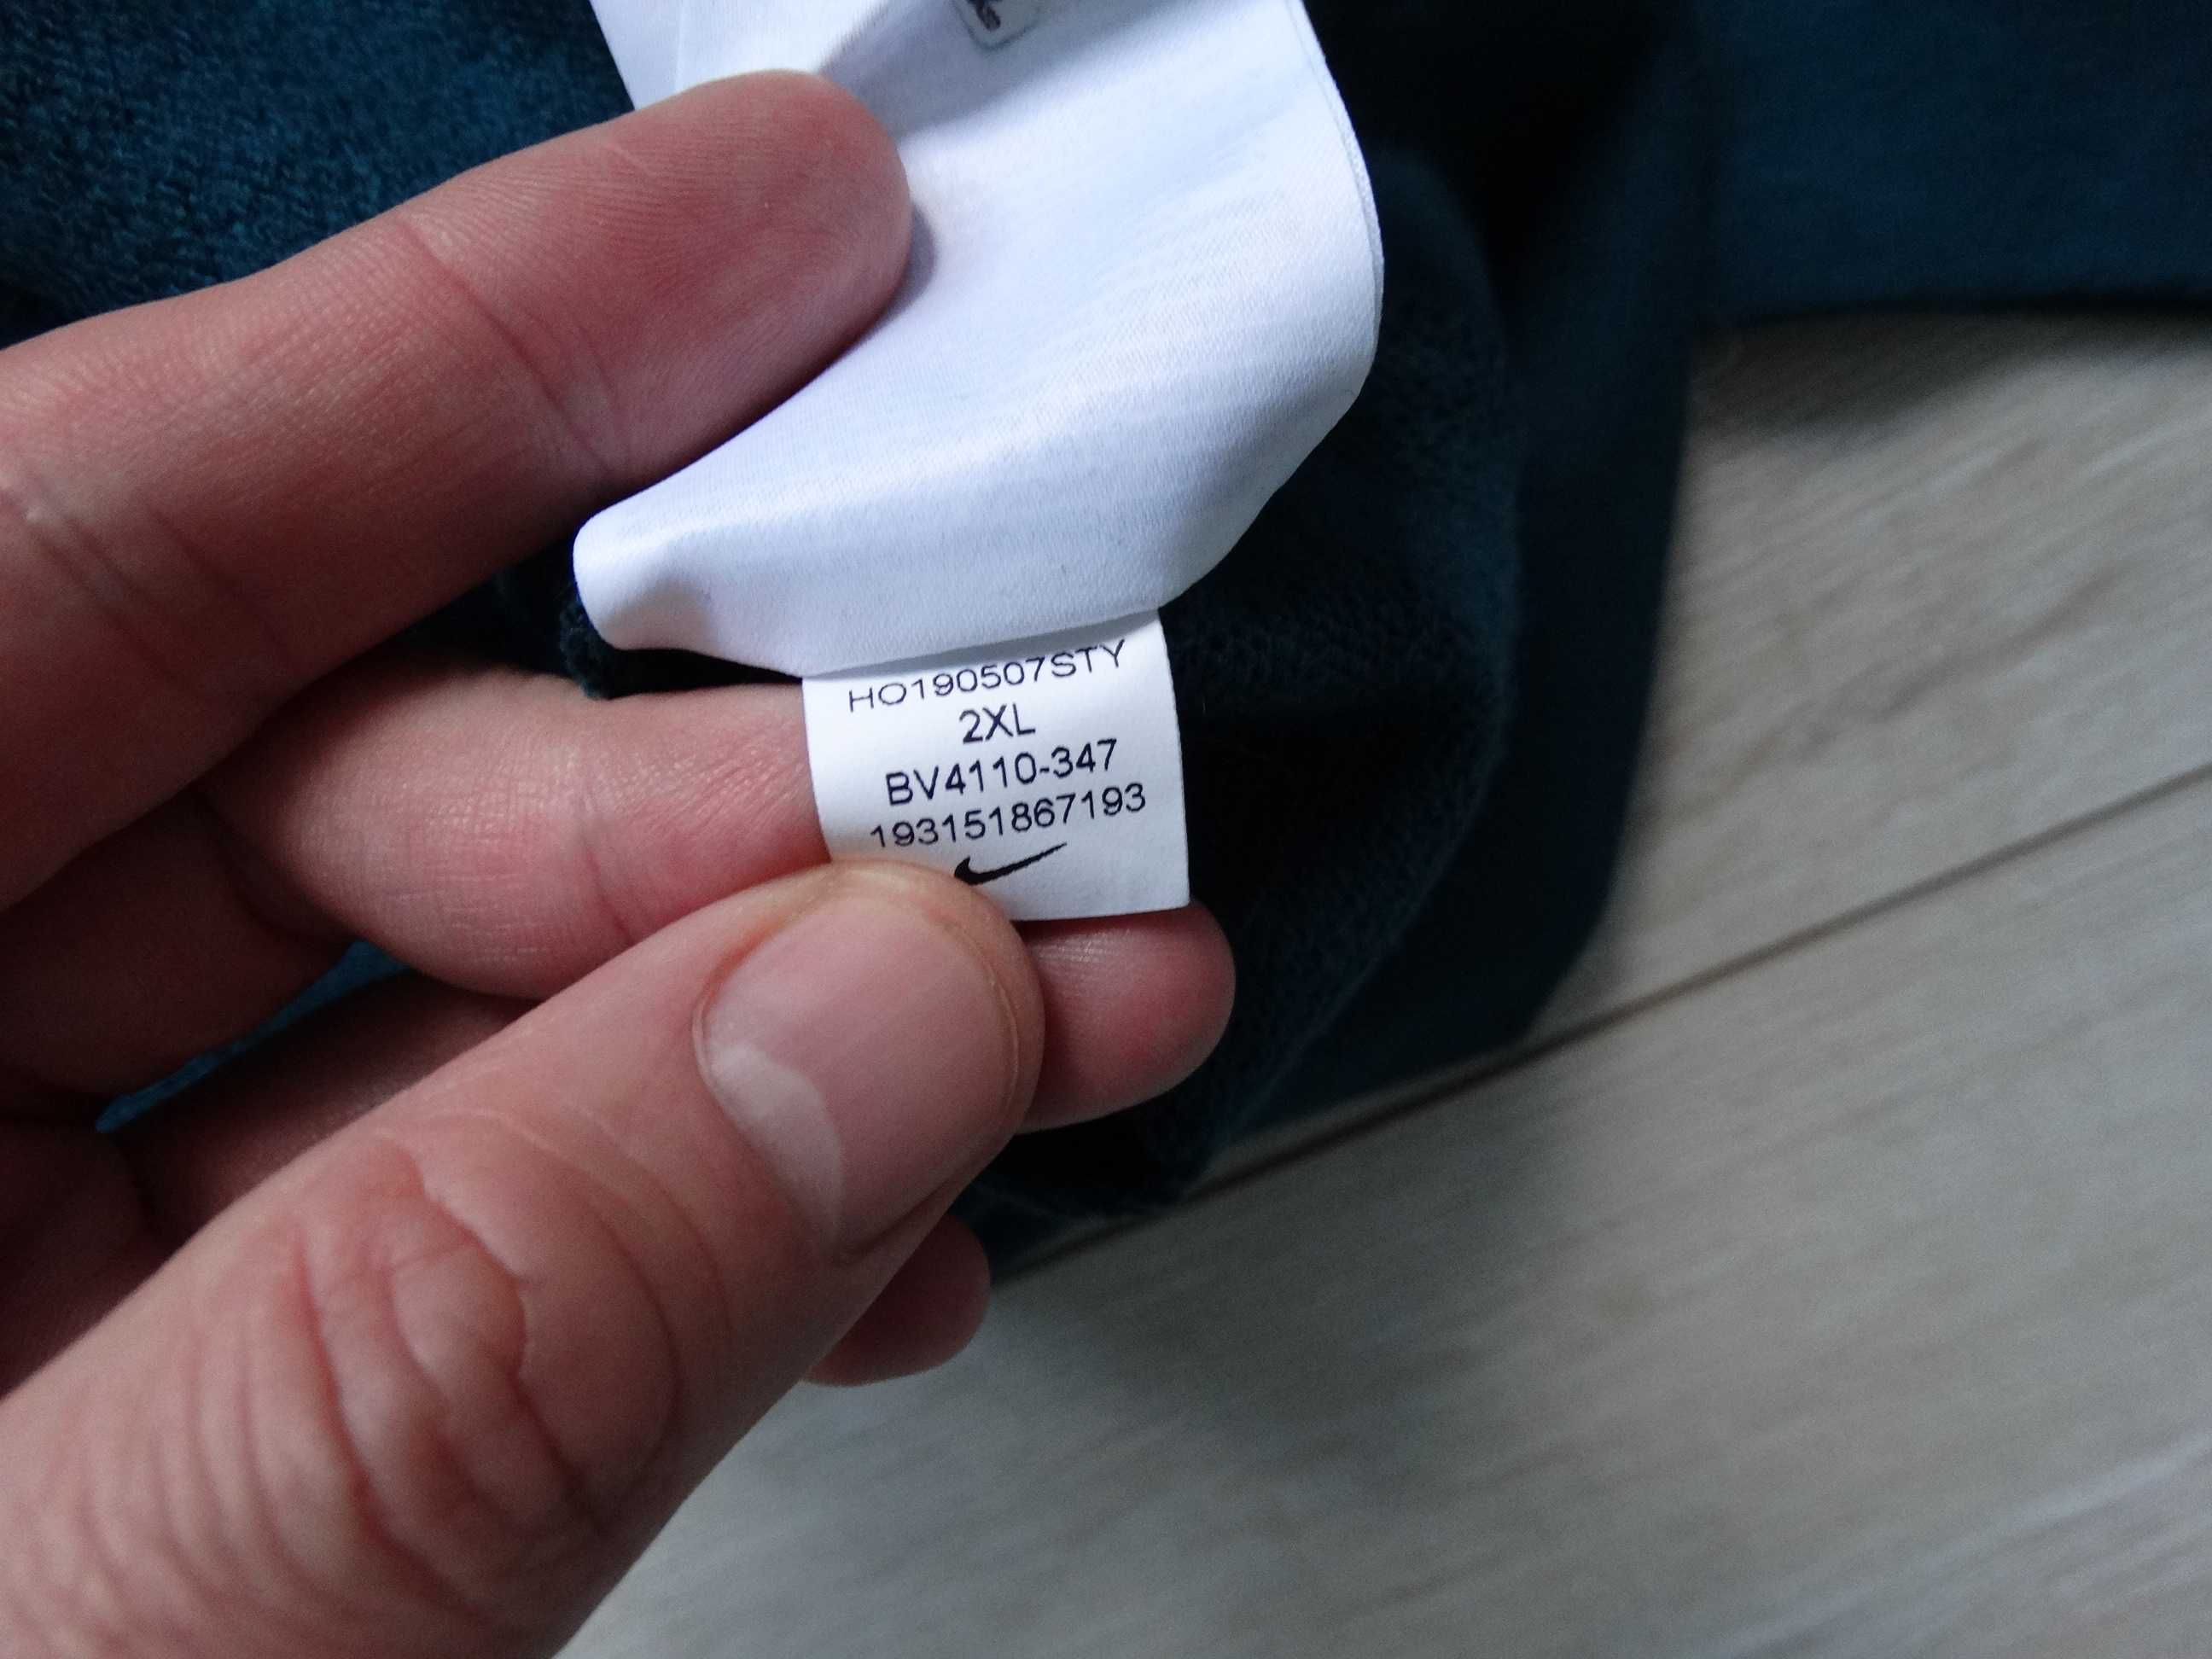 Нова Найк Nike Essential женска блуза фланела размер XXL